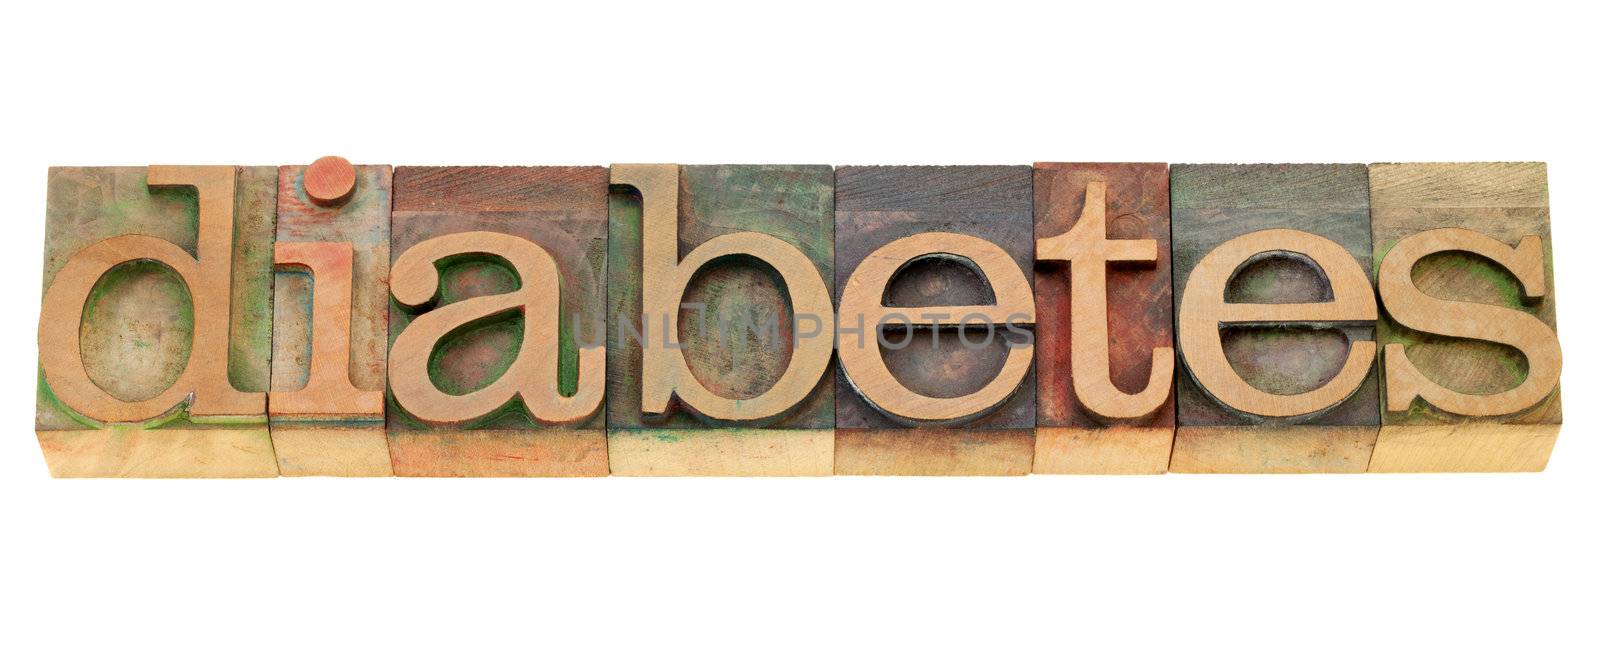 diabetes - word in letterpress type by PixelsAway